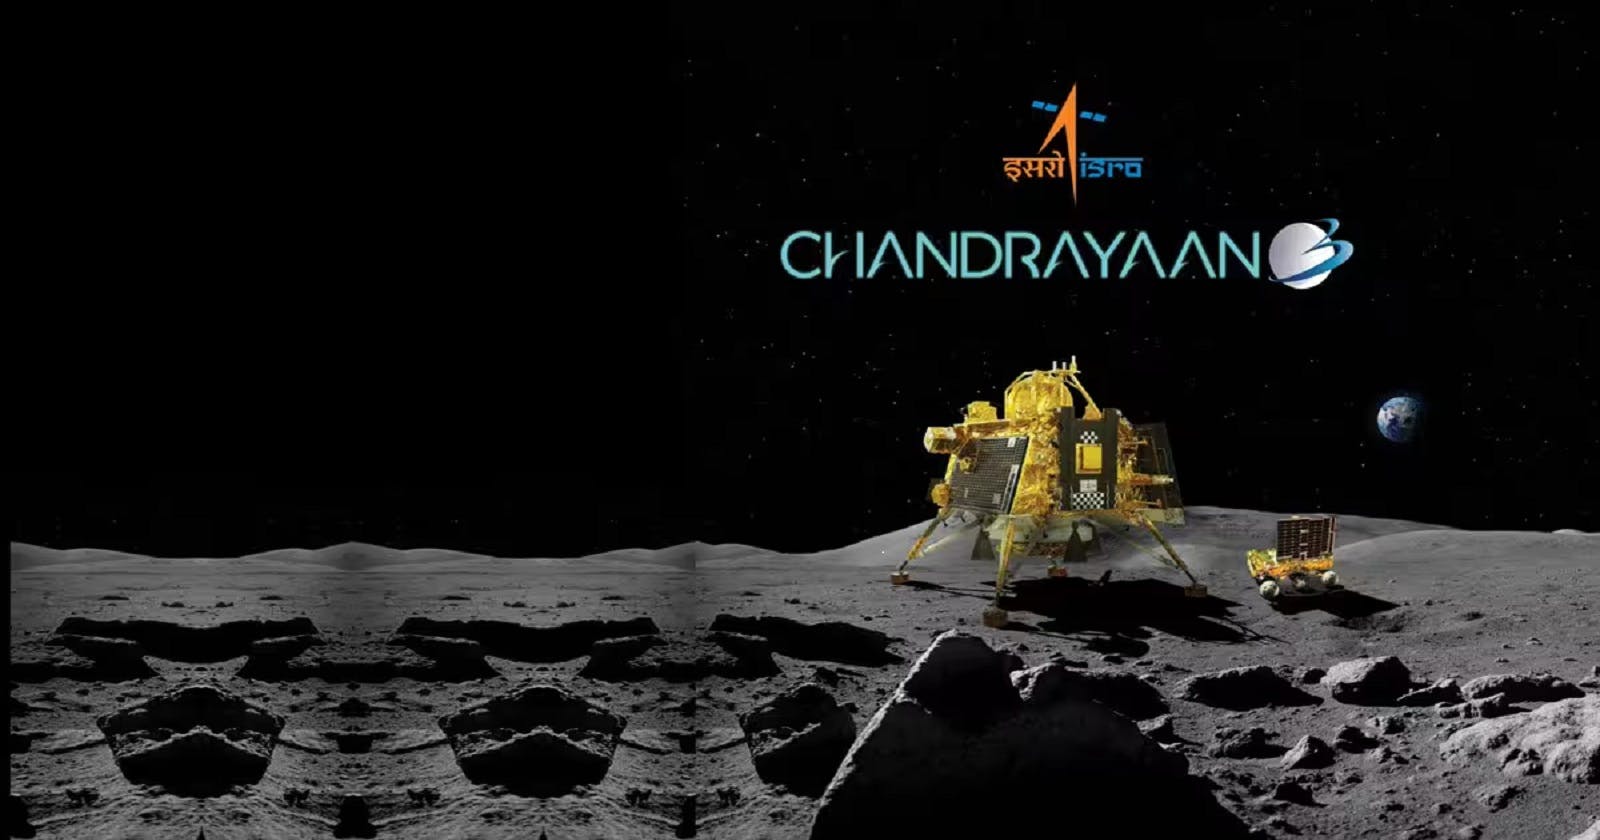 Chandrayaan 3 -"Now India is on Moon"